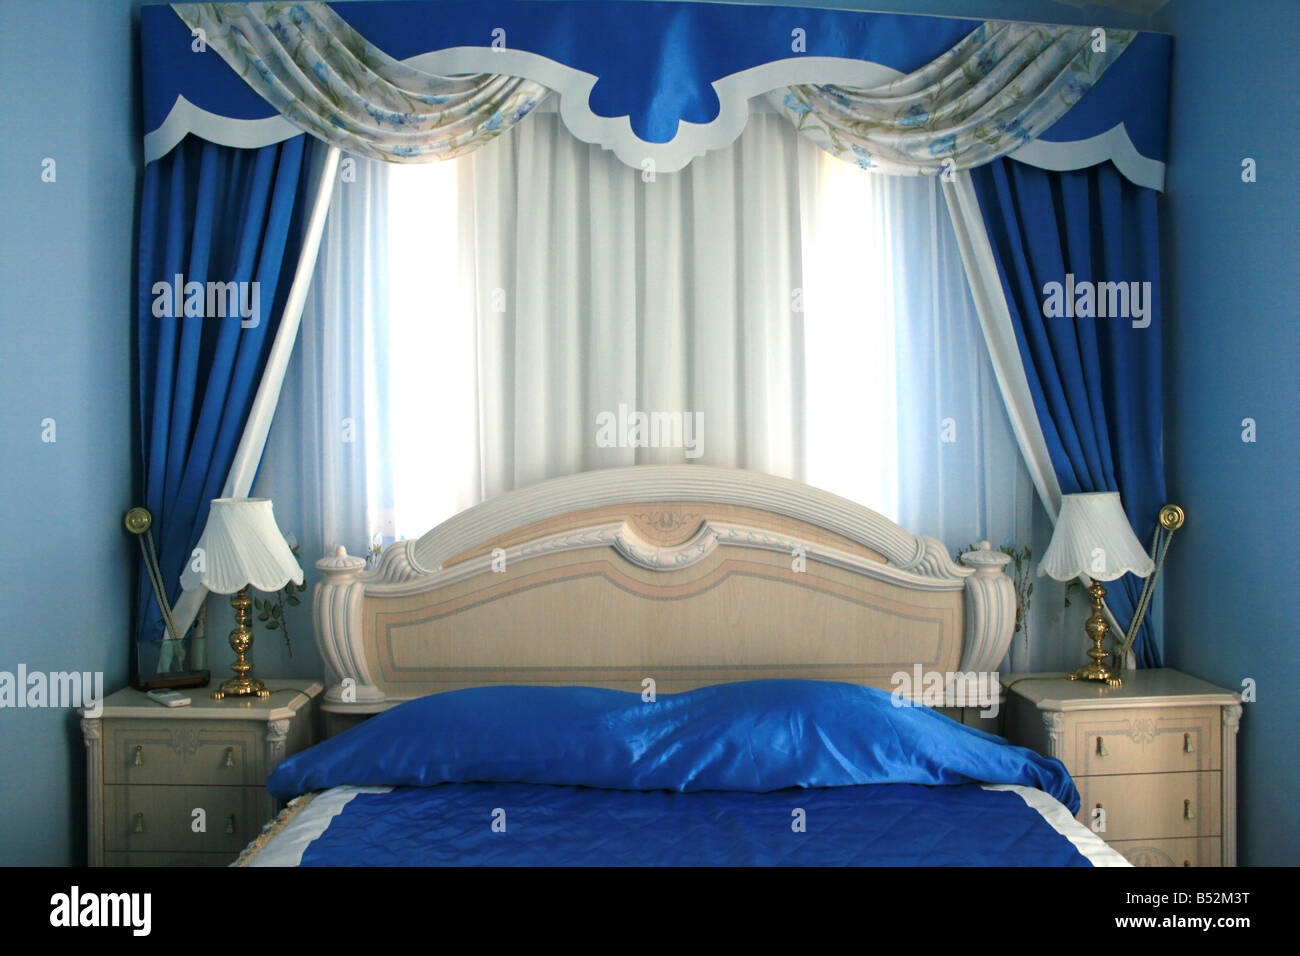 Blaue modische Schlafzimmer mit schönen Vorhängen Stockfoto